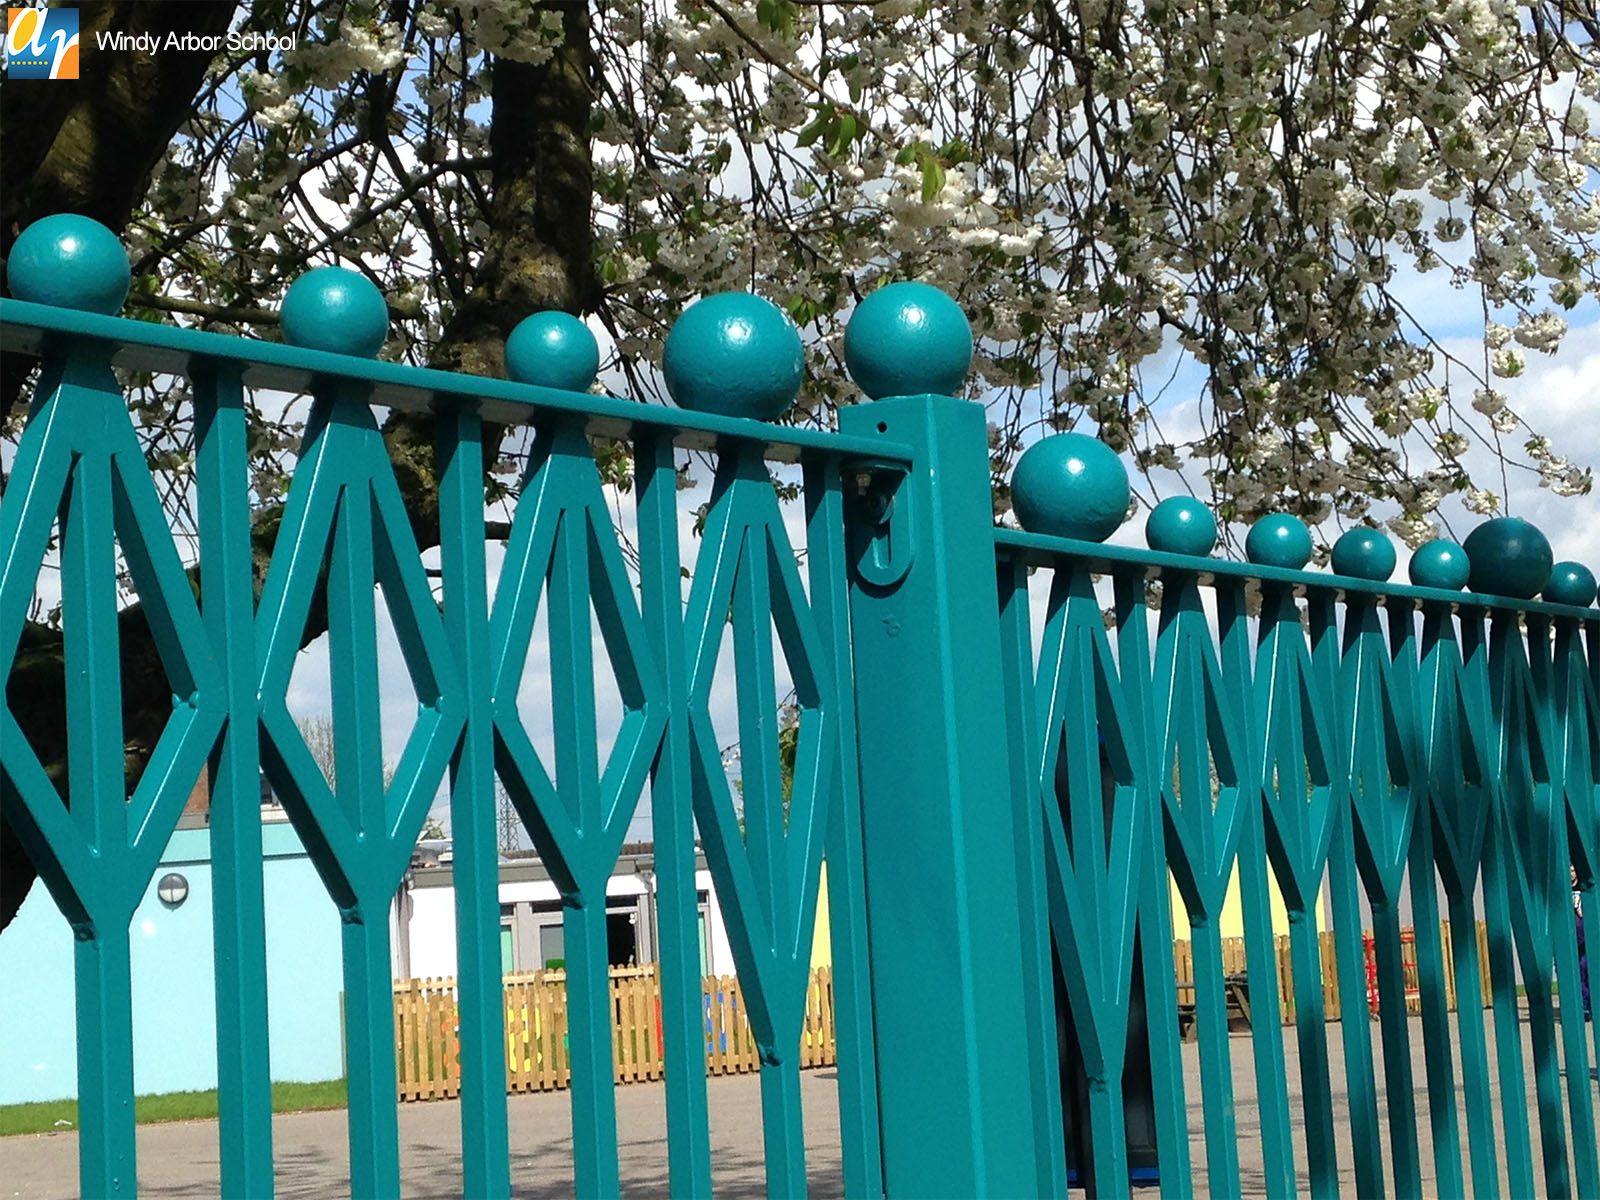 Bespoke metal railings for schools